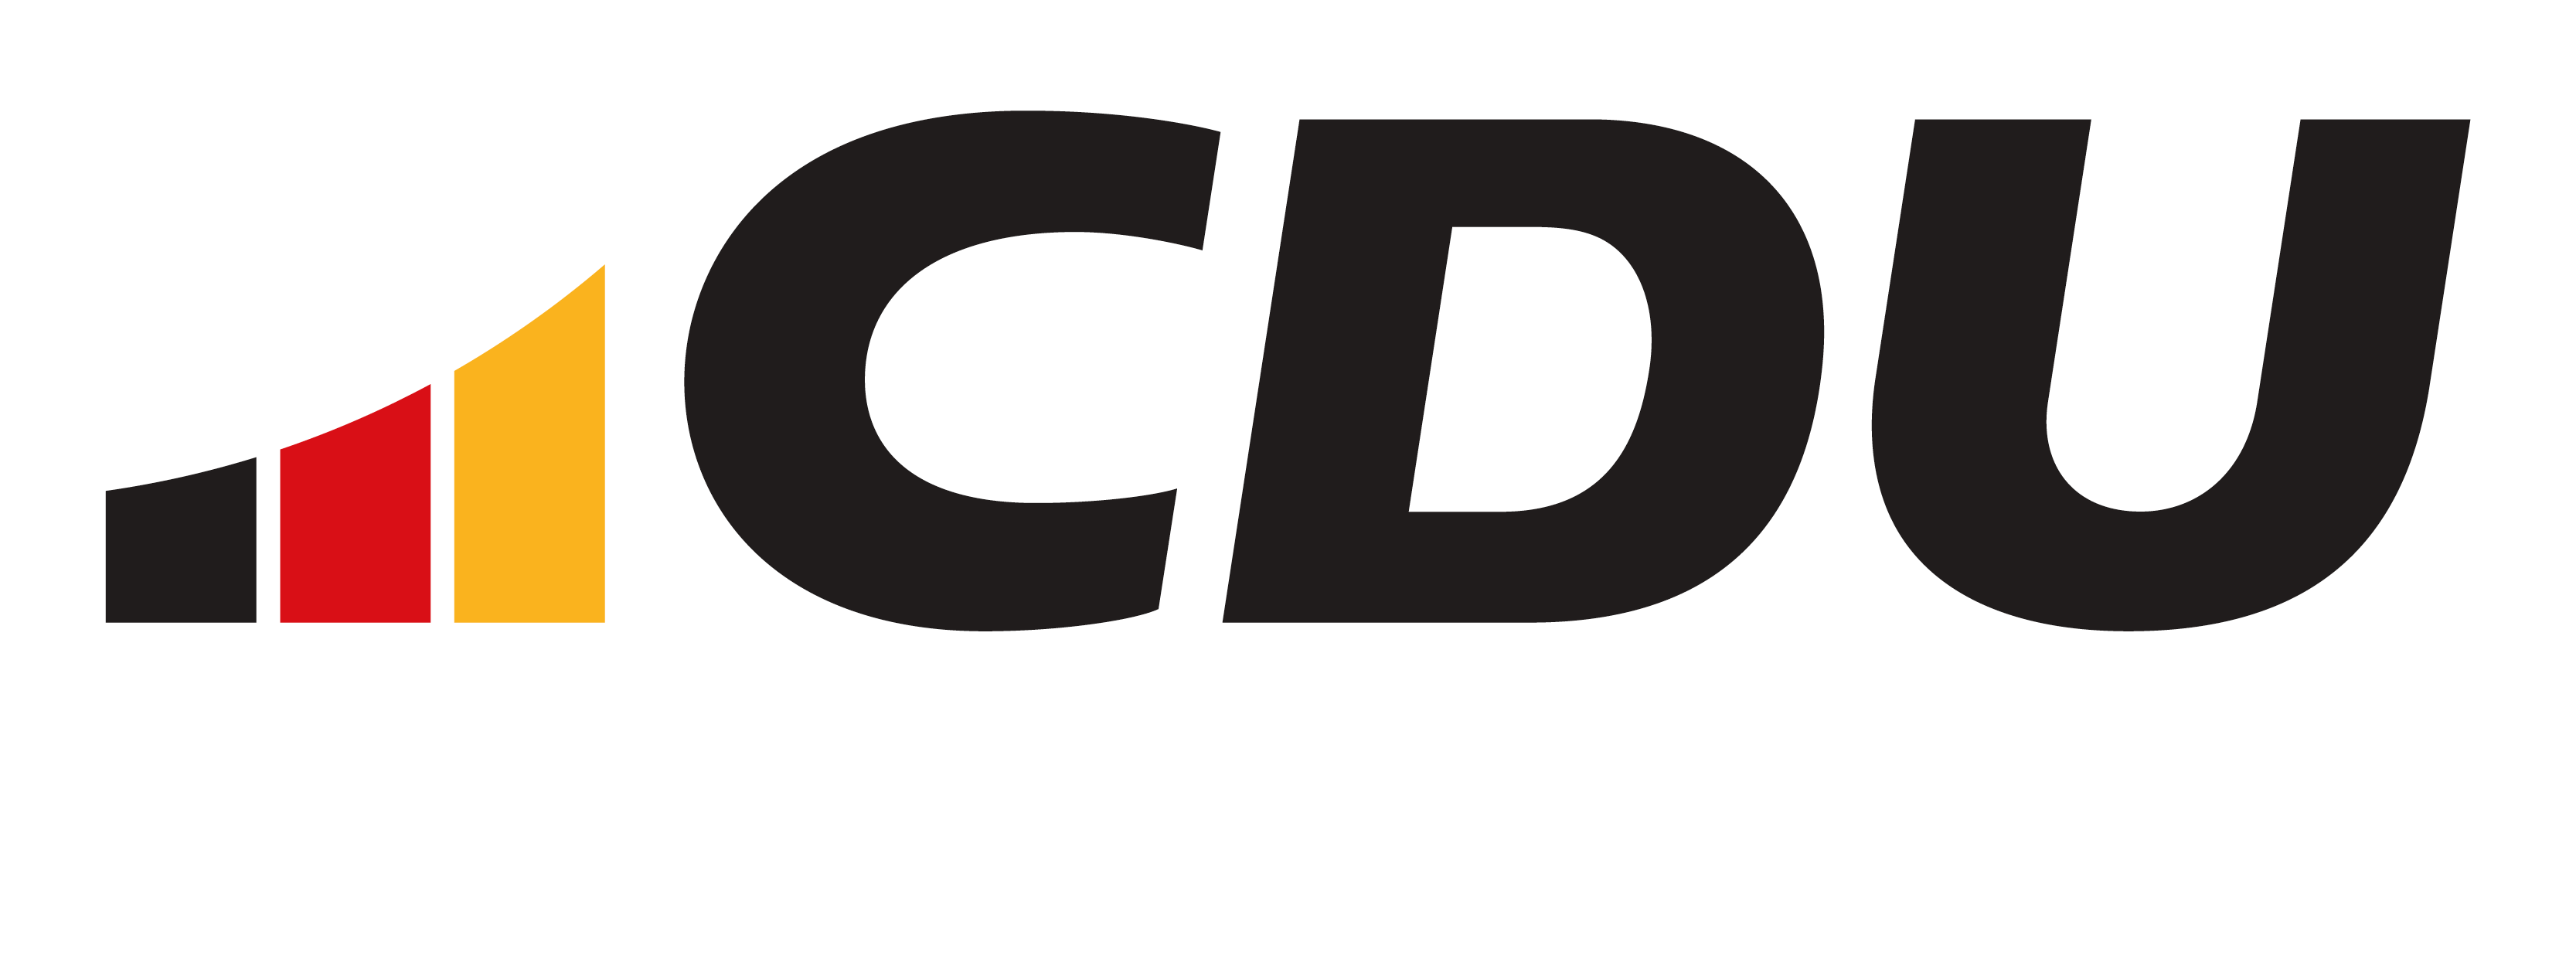 CDU Kreisverband Eimsbüttel